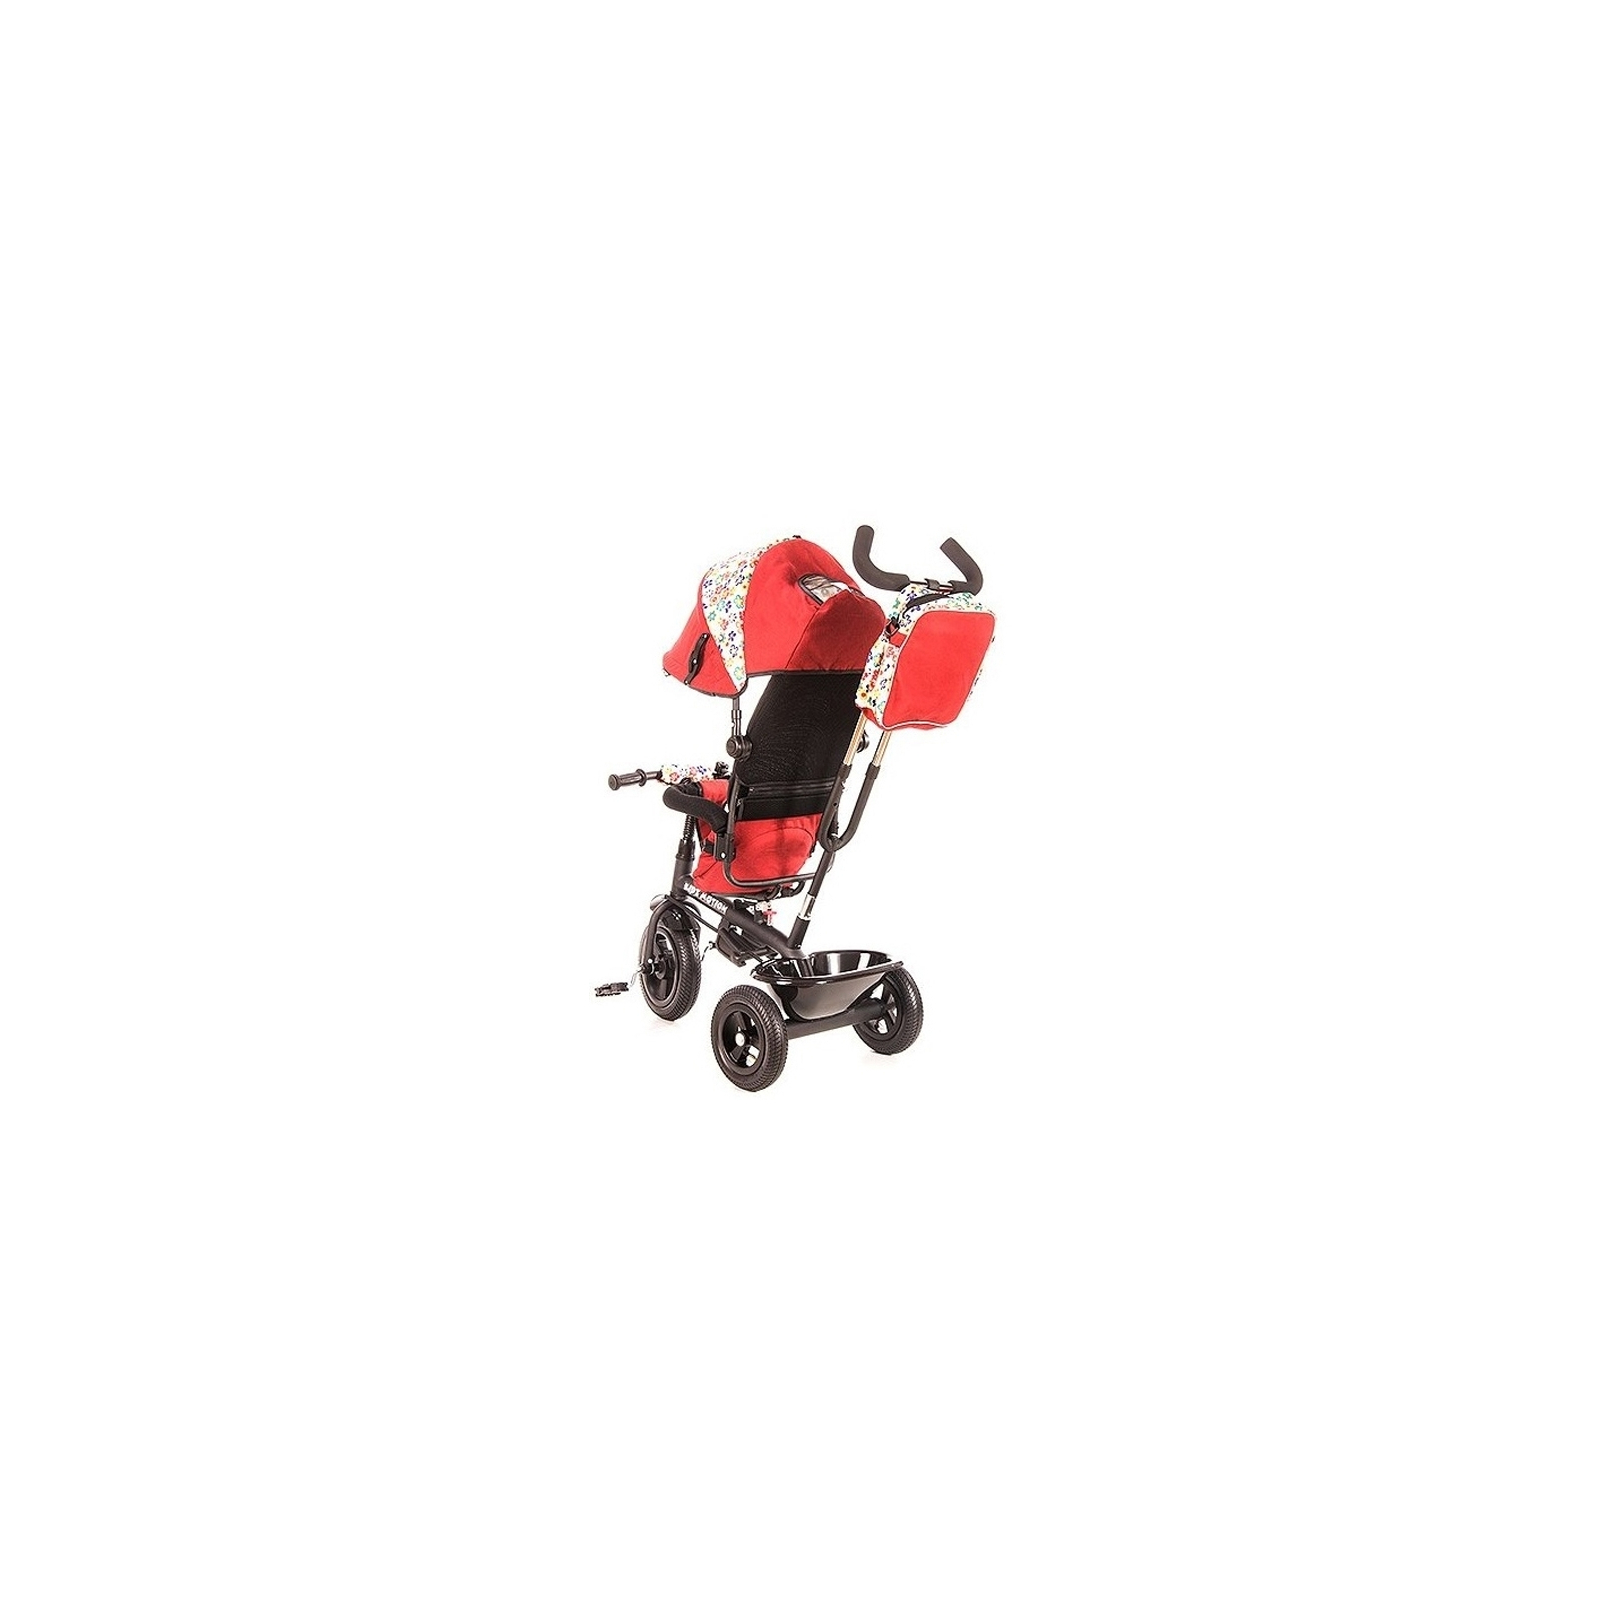 Детский велосипед KidzMotion Tobi Venture RED (115002/red) изображение 2